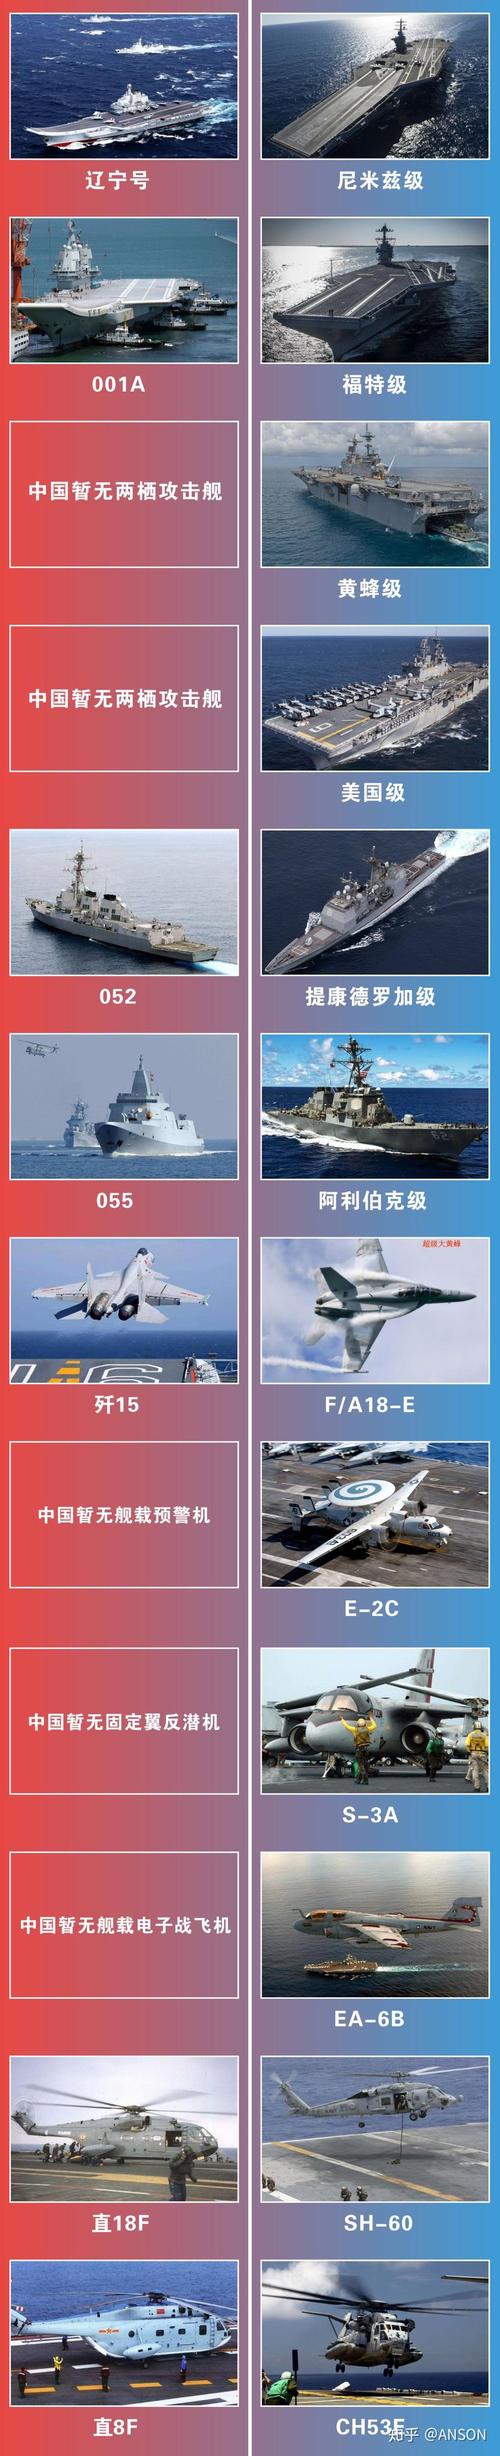 中国战力vs美国战力